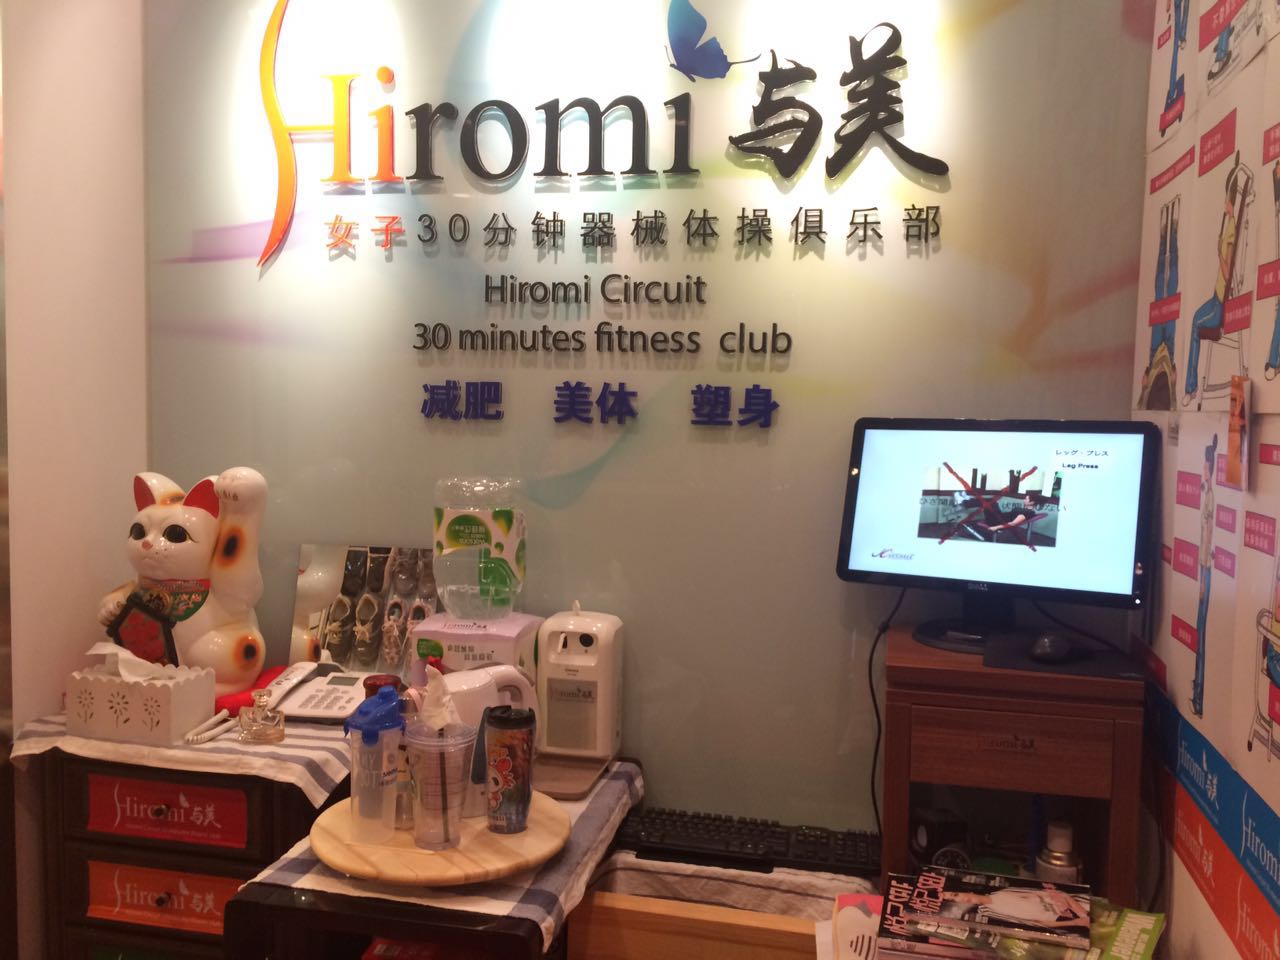 北京Hiromi与美女子器械体操俱乐部预订